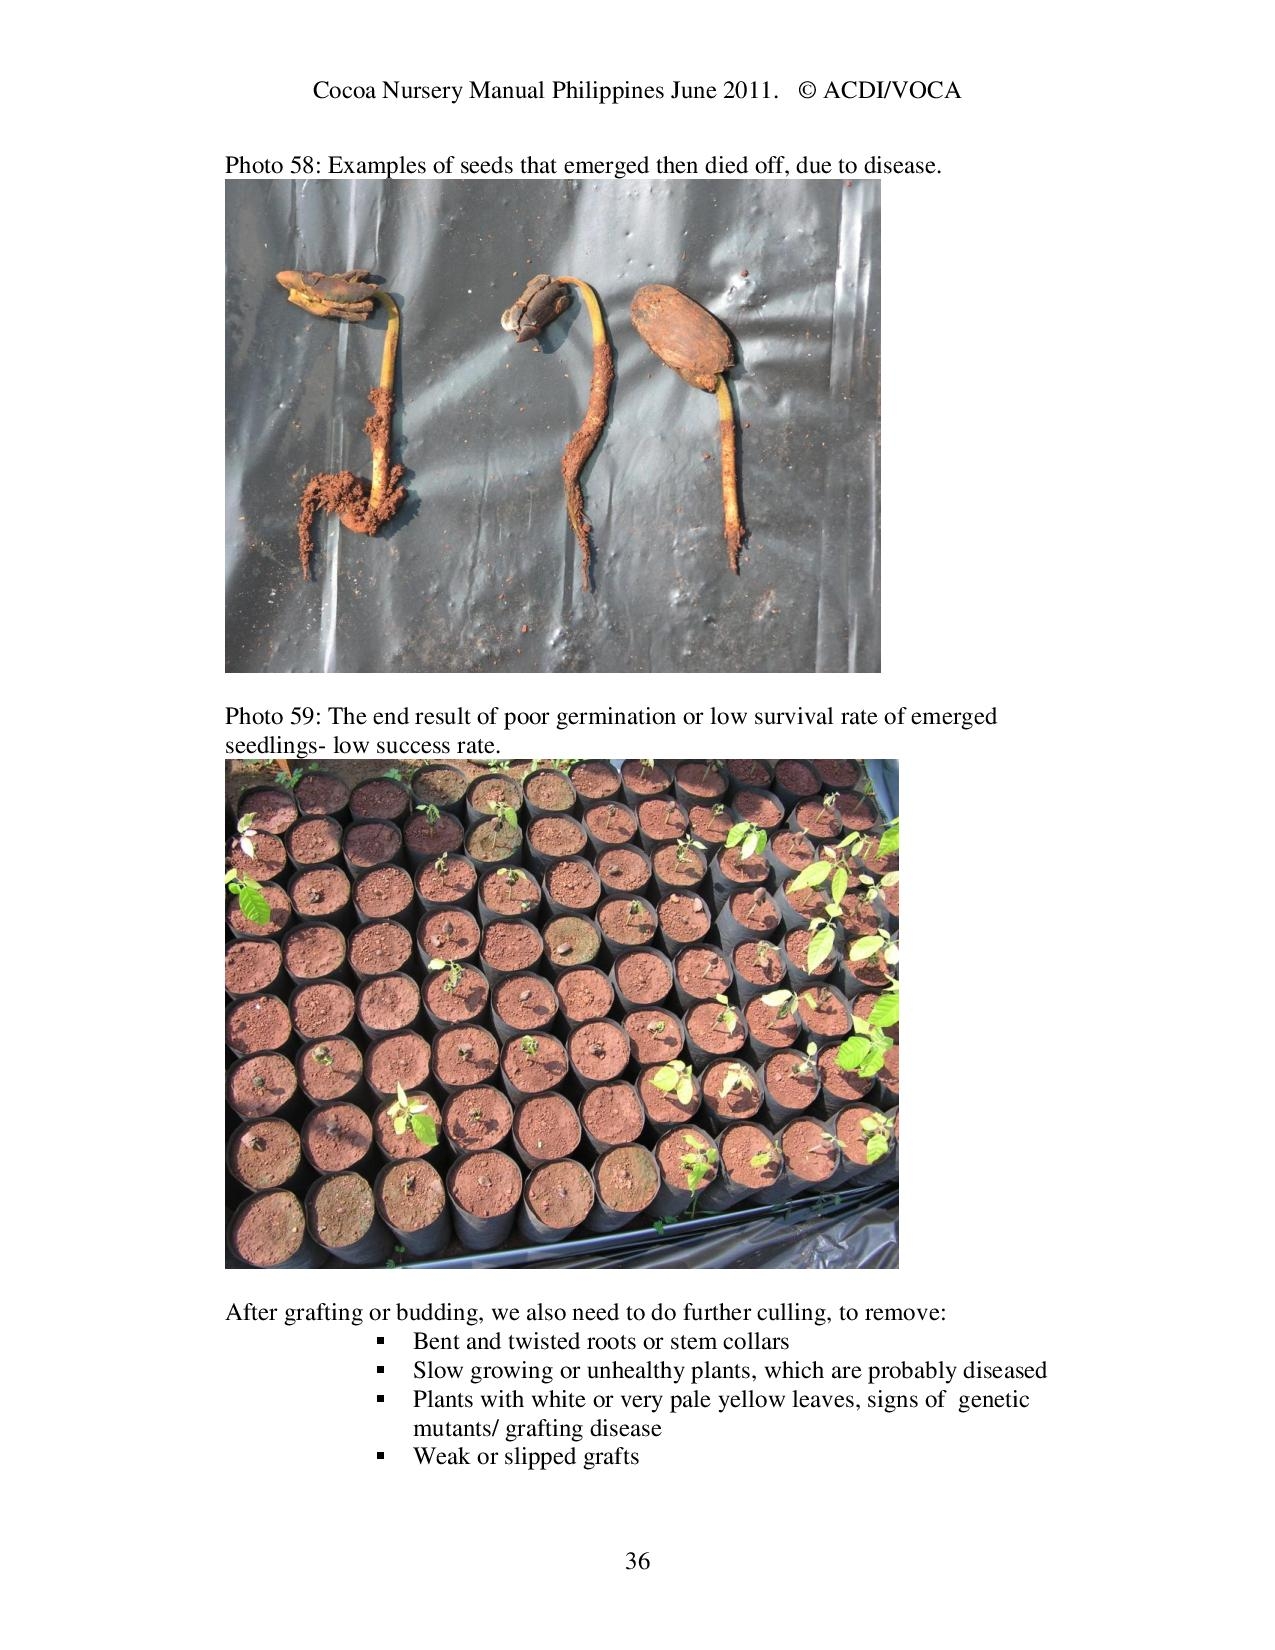 Cocoa-Nursery-Manual-2011_acdi-voca-page-036